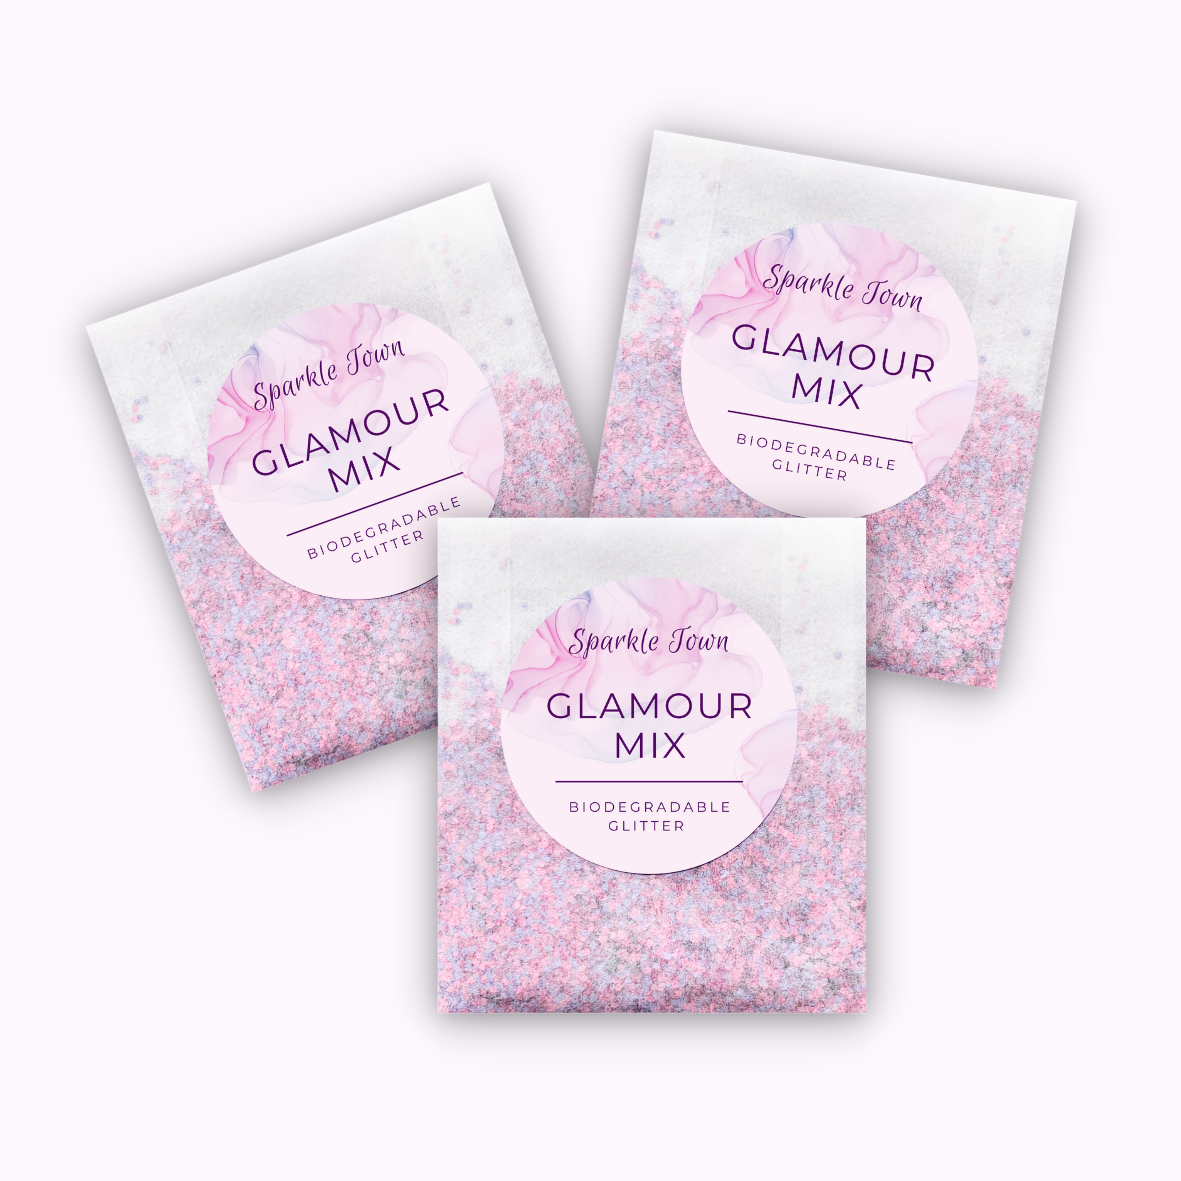 Glamour Mix Biodegradable Glitter